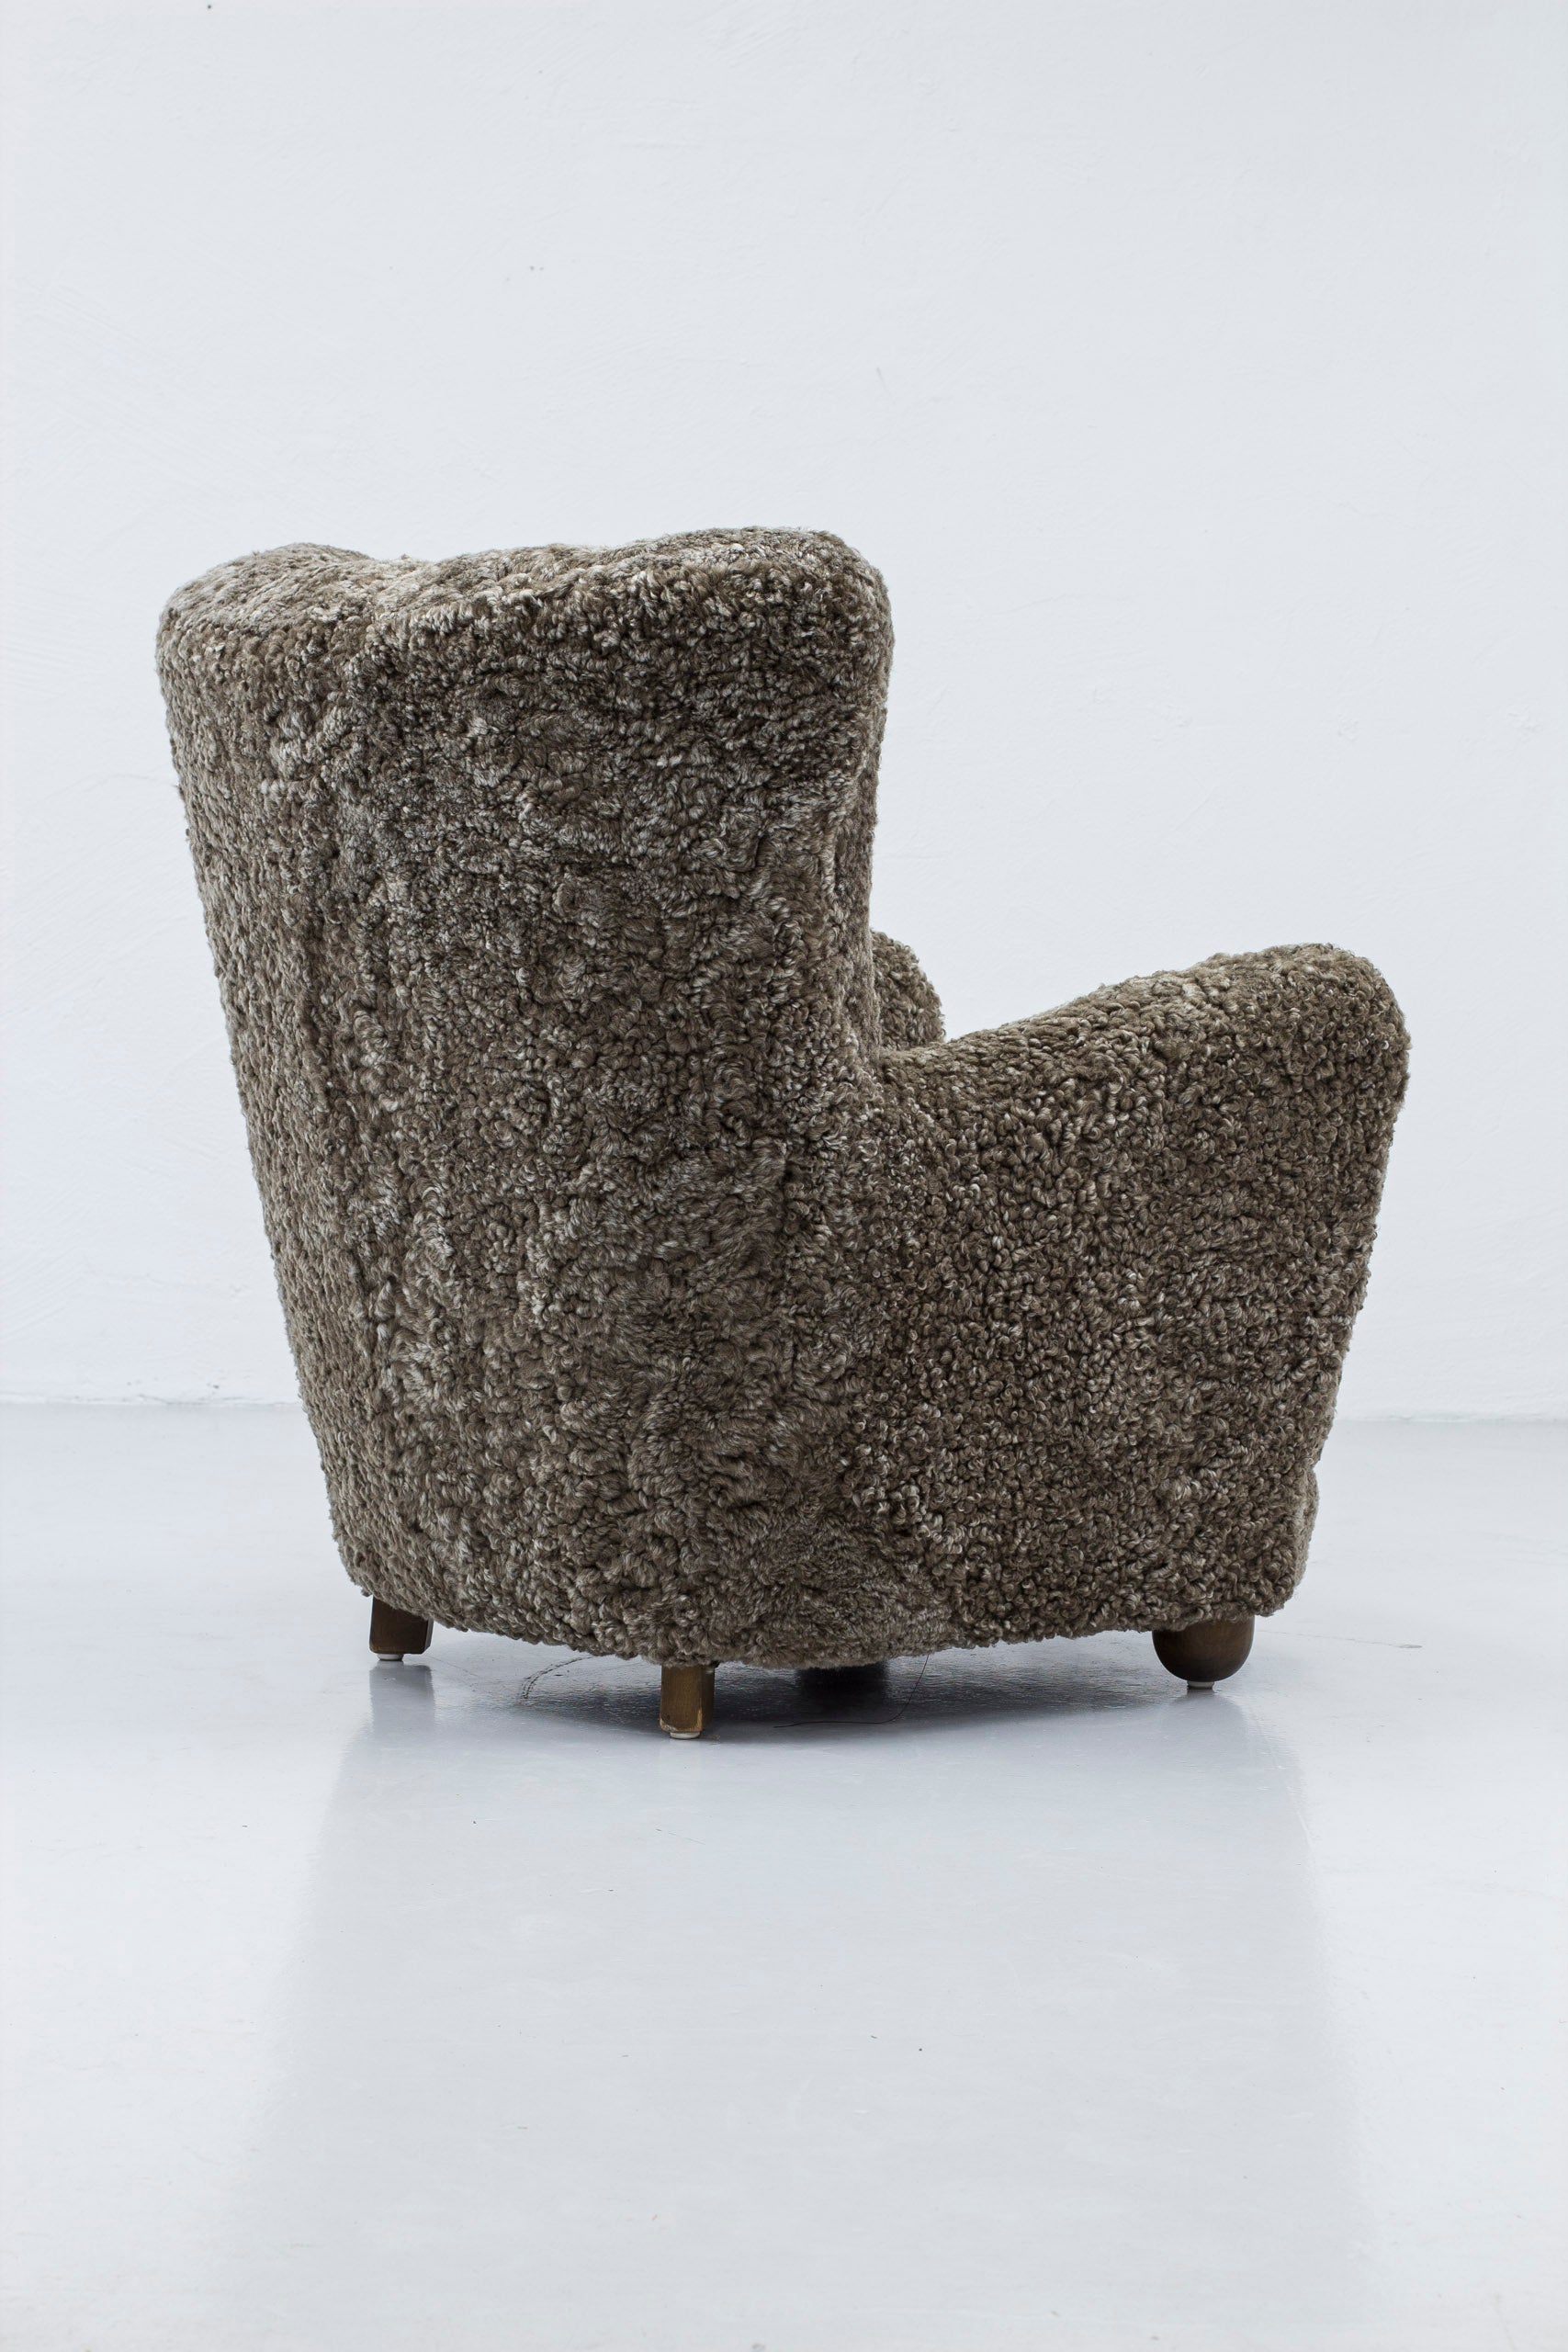 Danish modern sheepskin chair